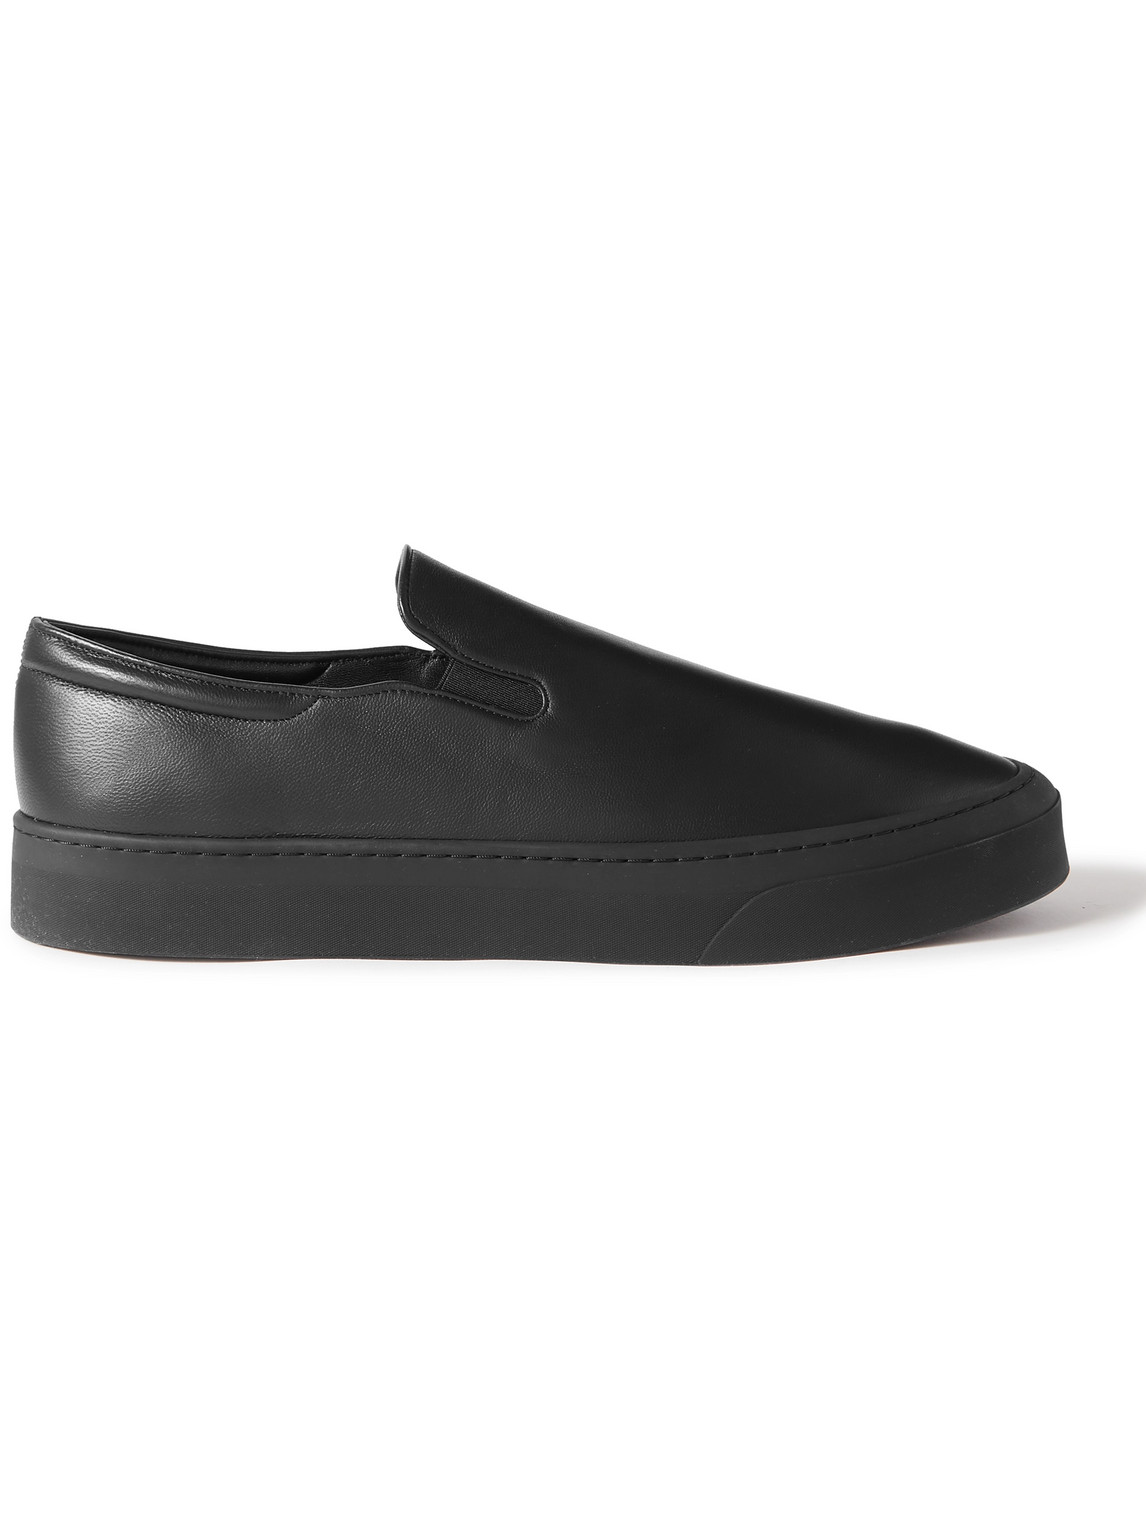 The Row - Dean Leather Slip-On Sneakers - Men - Black - EU 42 von The Row